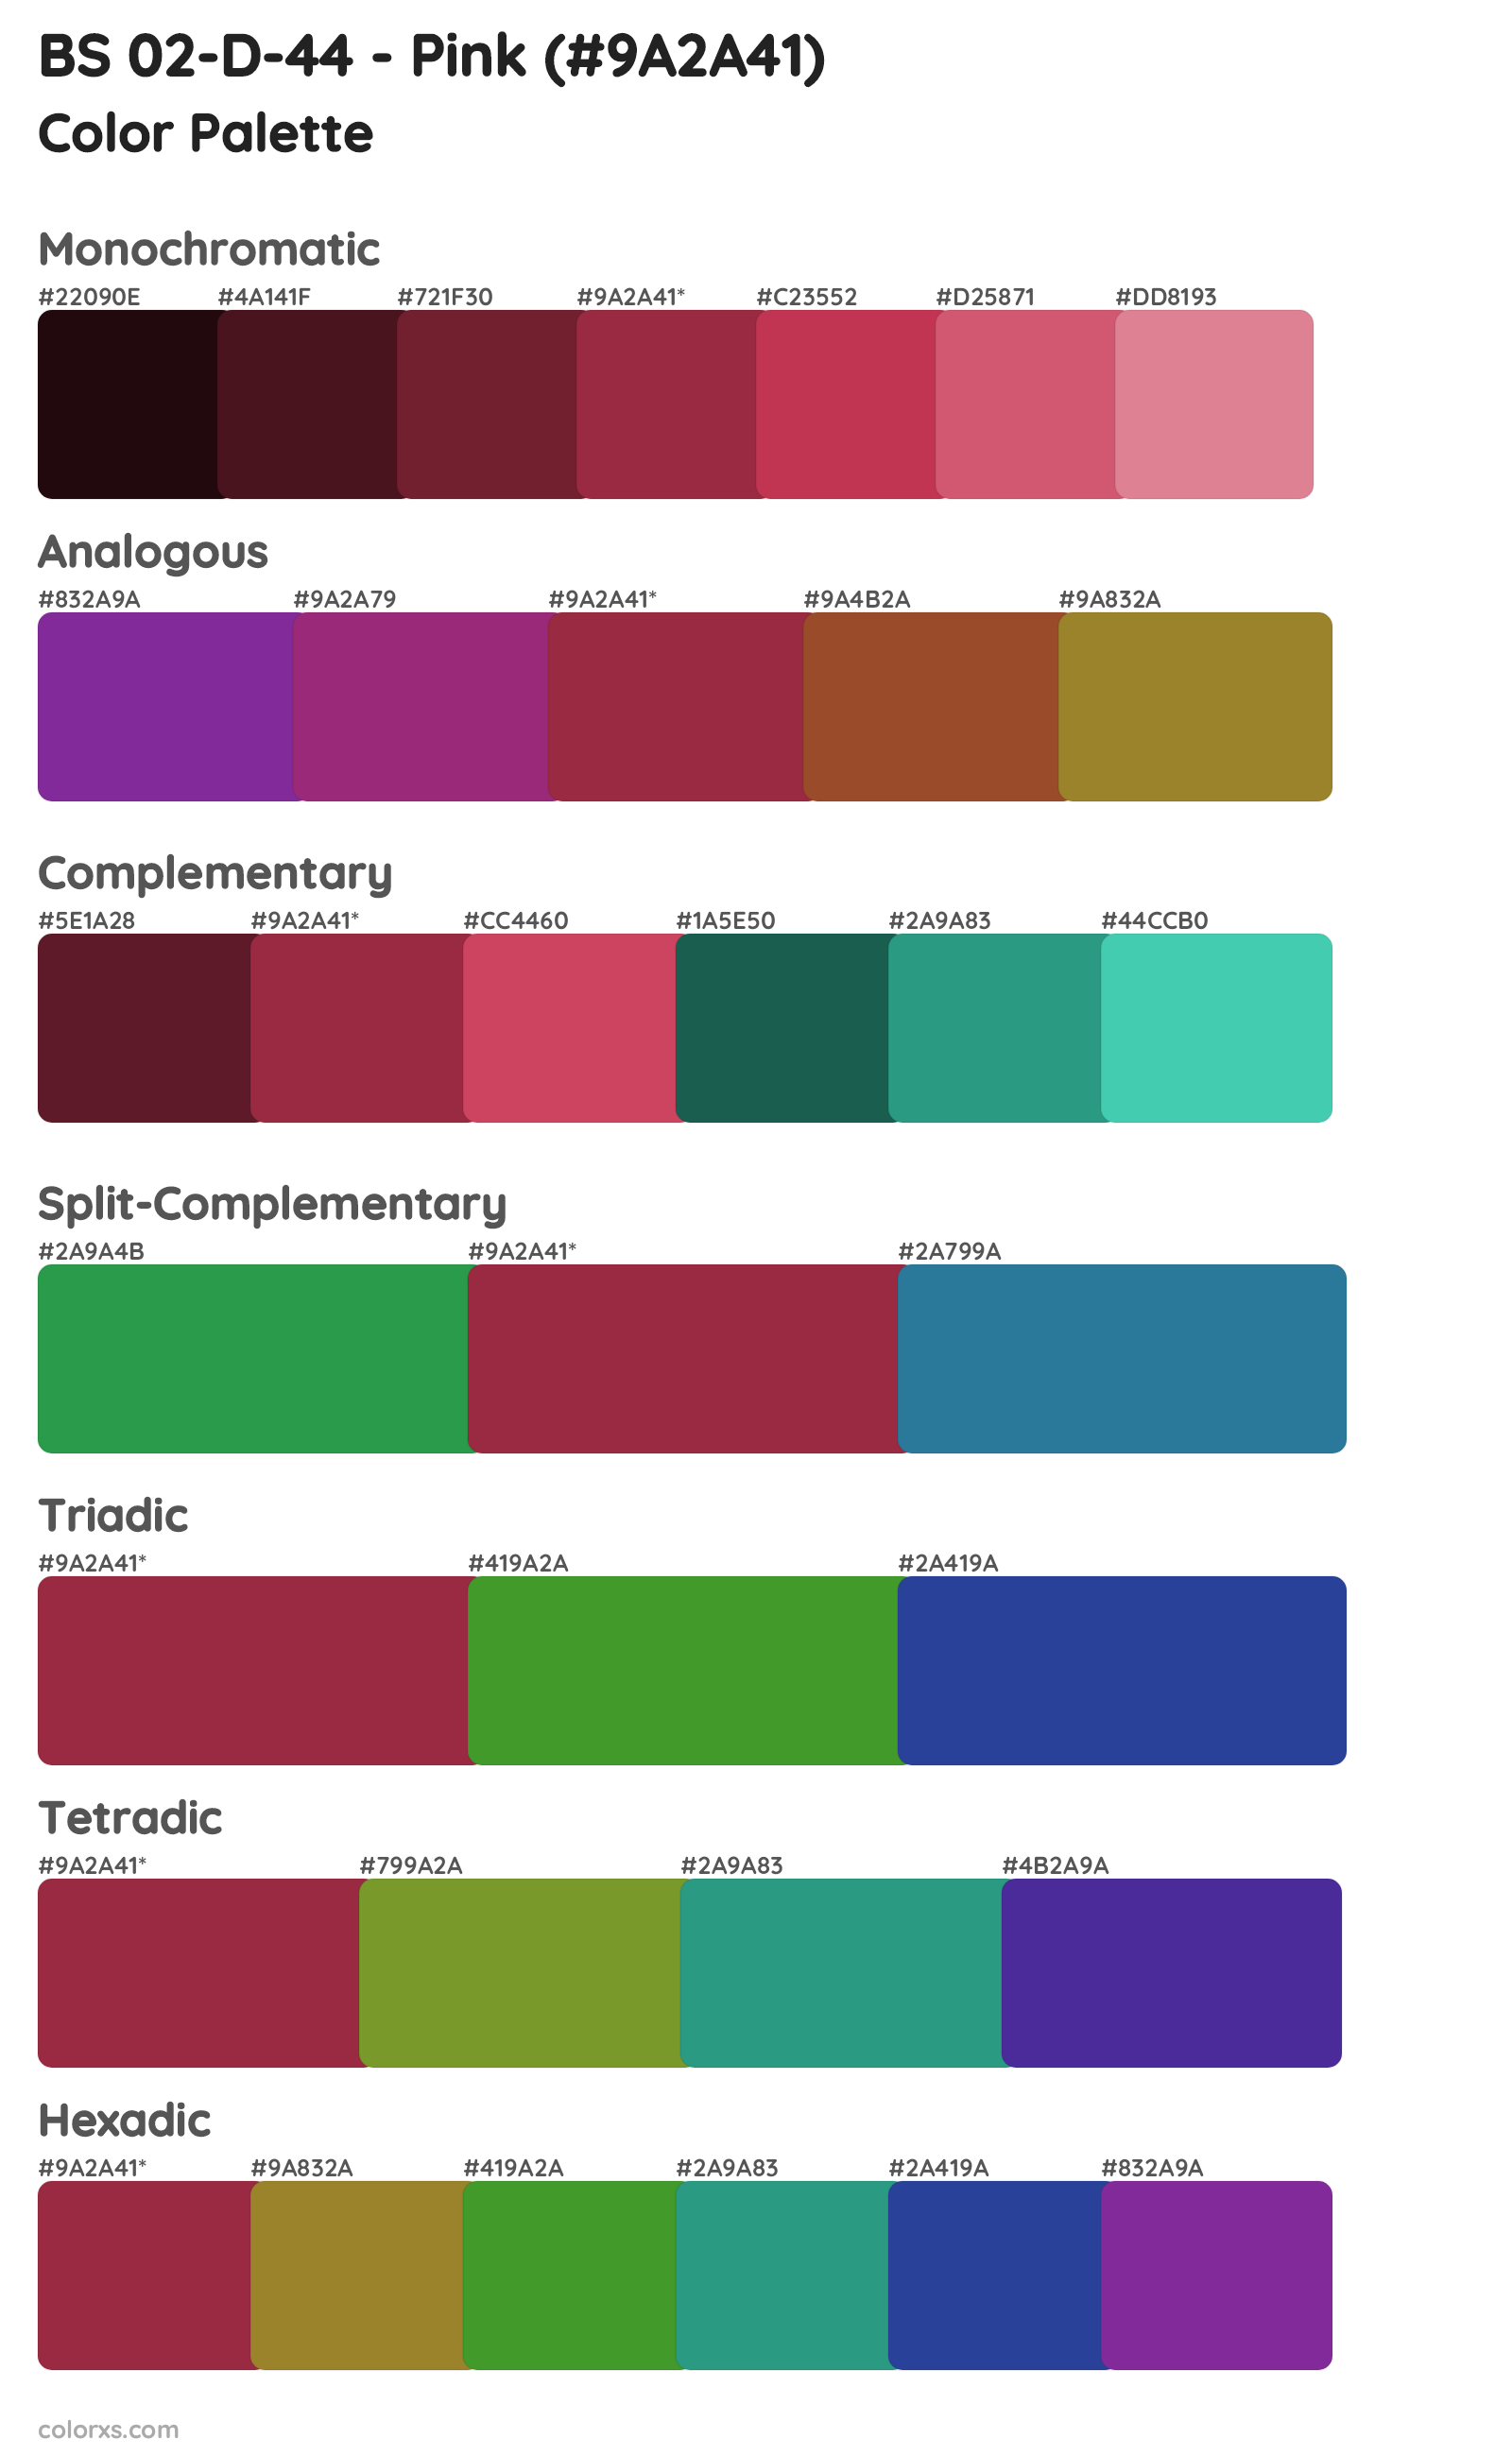 BS 02-D-44 - Pink Color Scheme Palettes